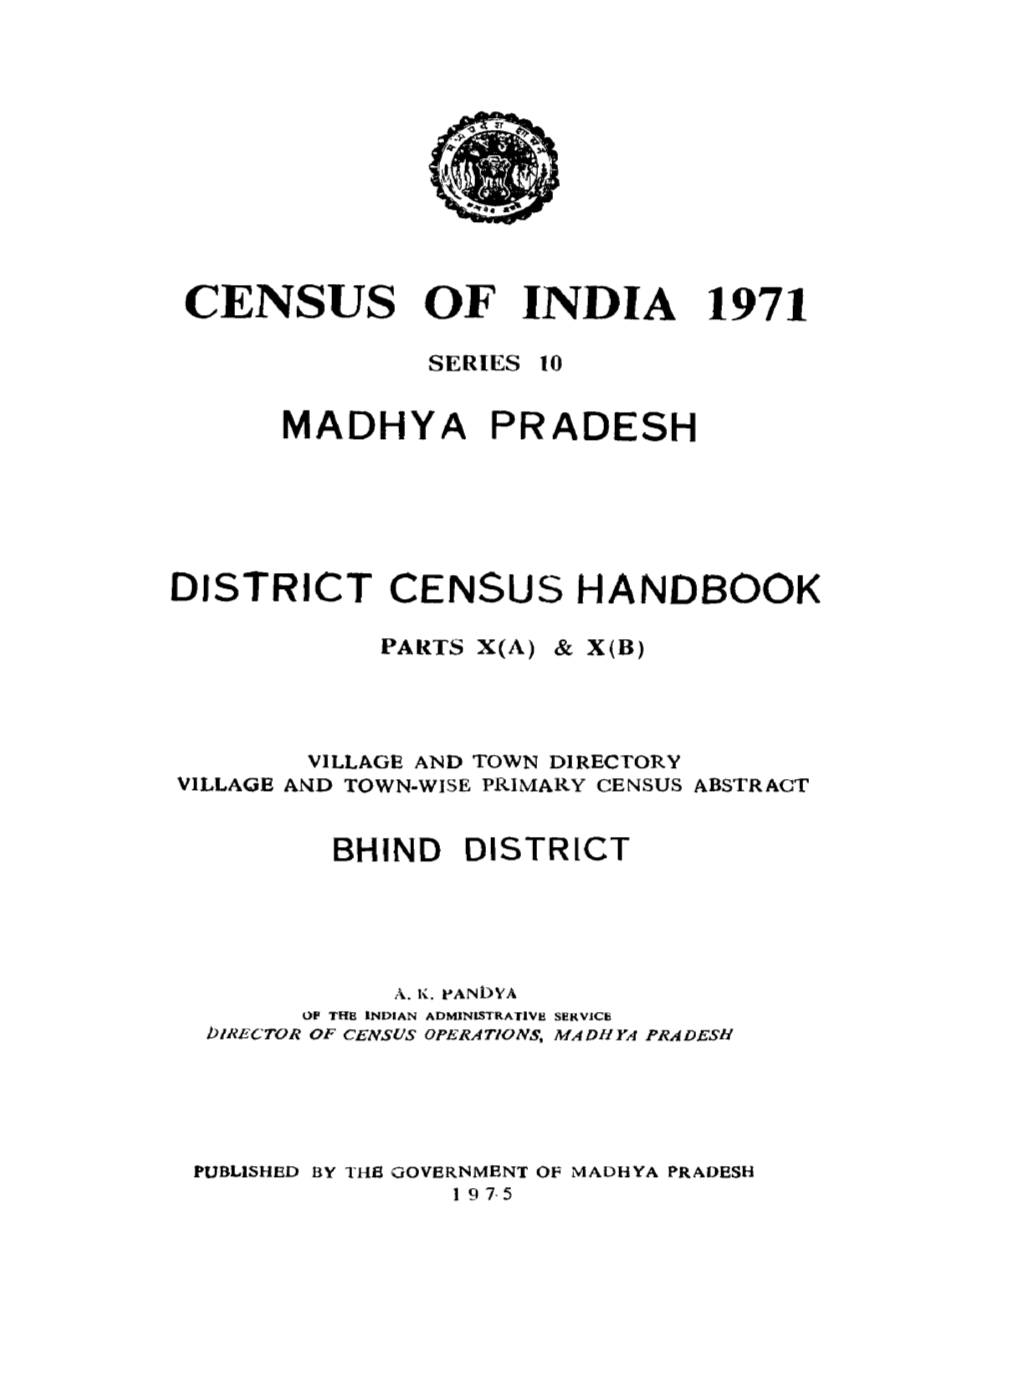 District Census Handbook, Bhind, Parts X